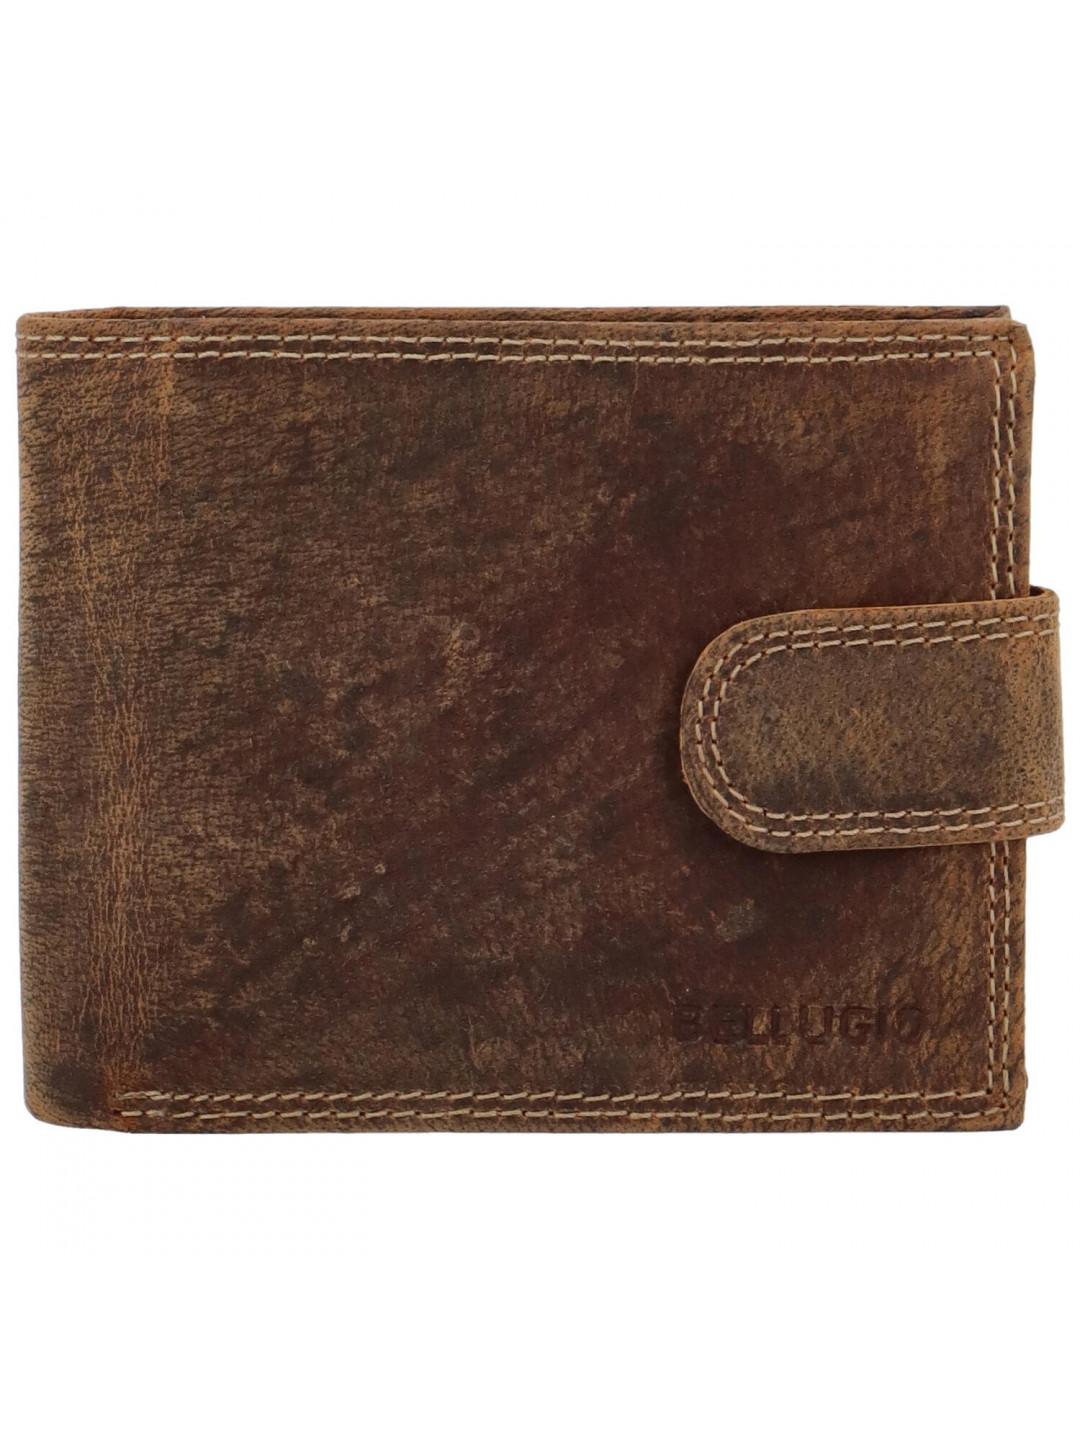 Pánská kožená peněženka na šířku Bellugio Louis tmavě hnědá